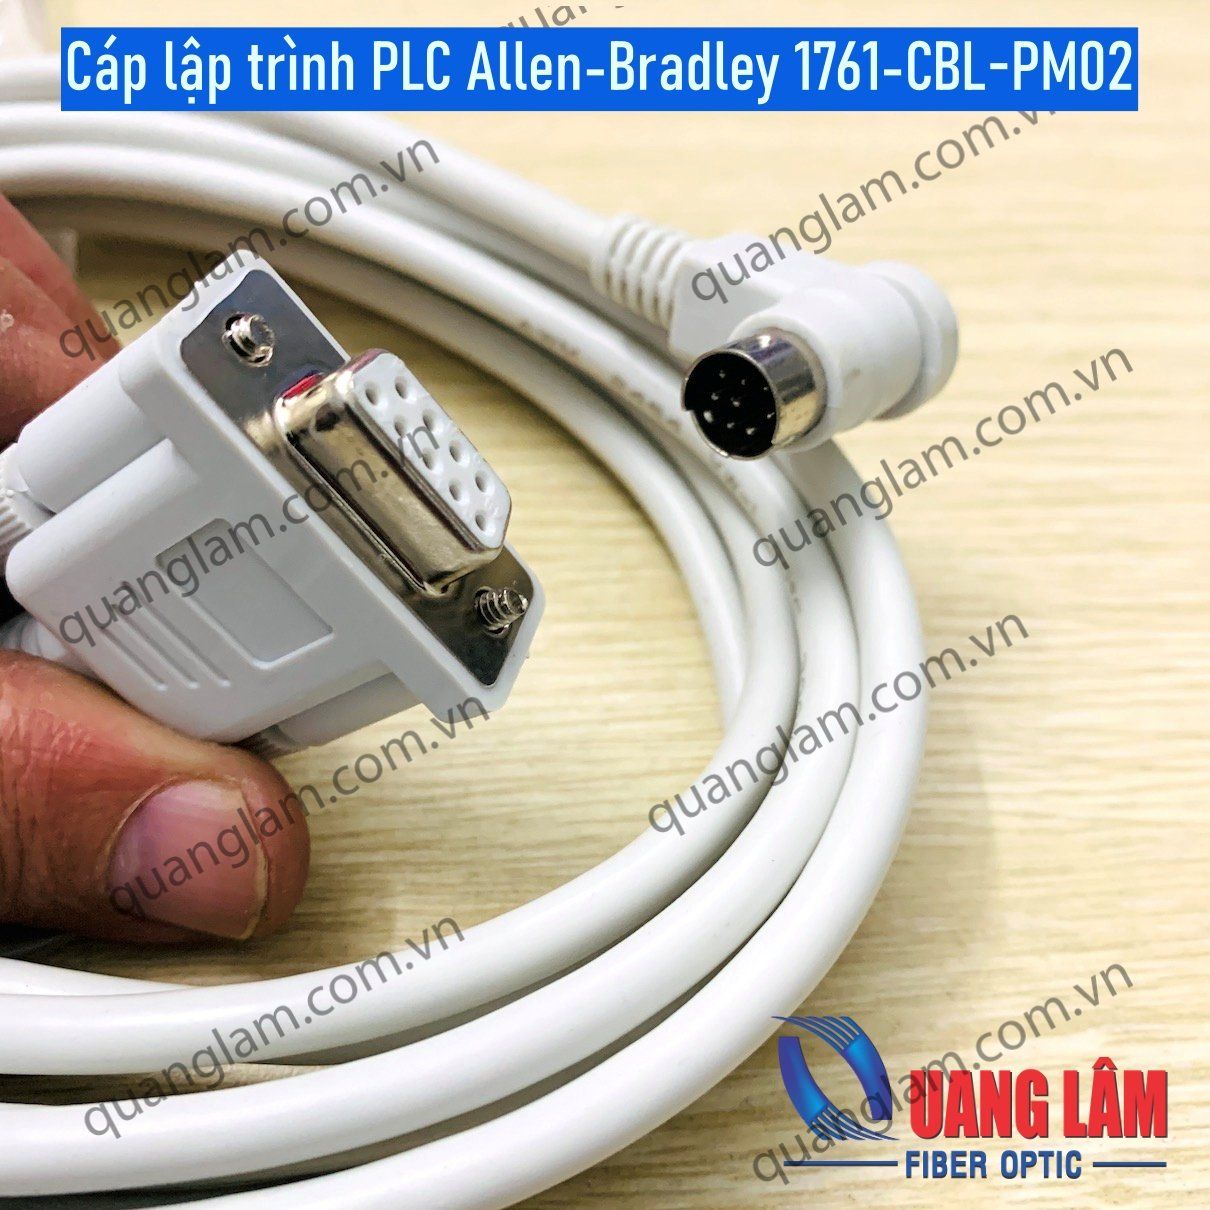 Cáp lập trình PLC Allen-Bradley 1761-CBL-PM02 dài 3M